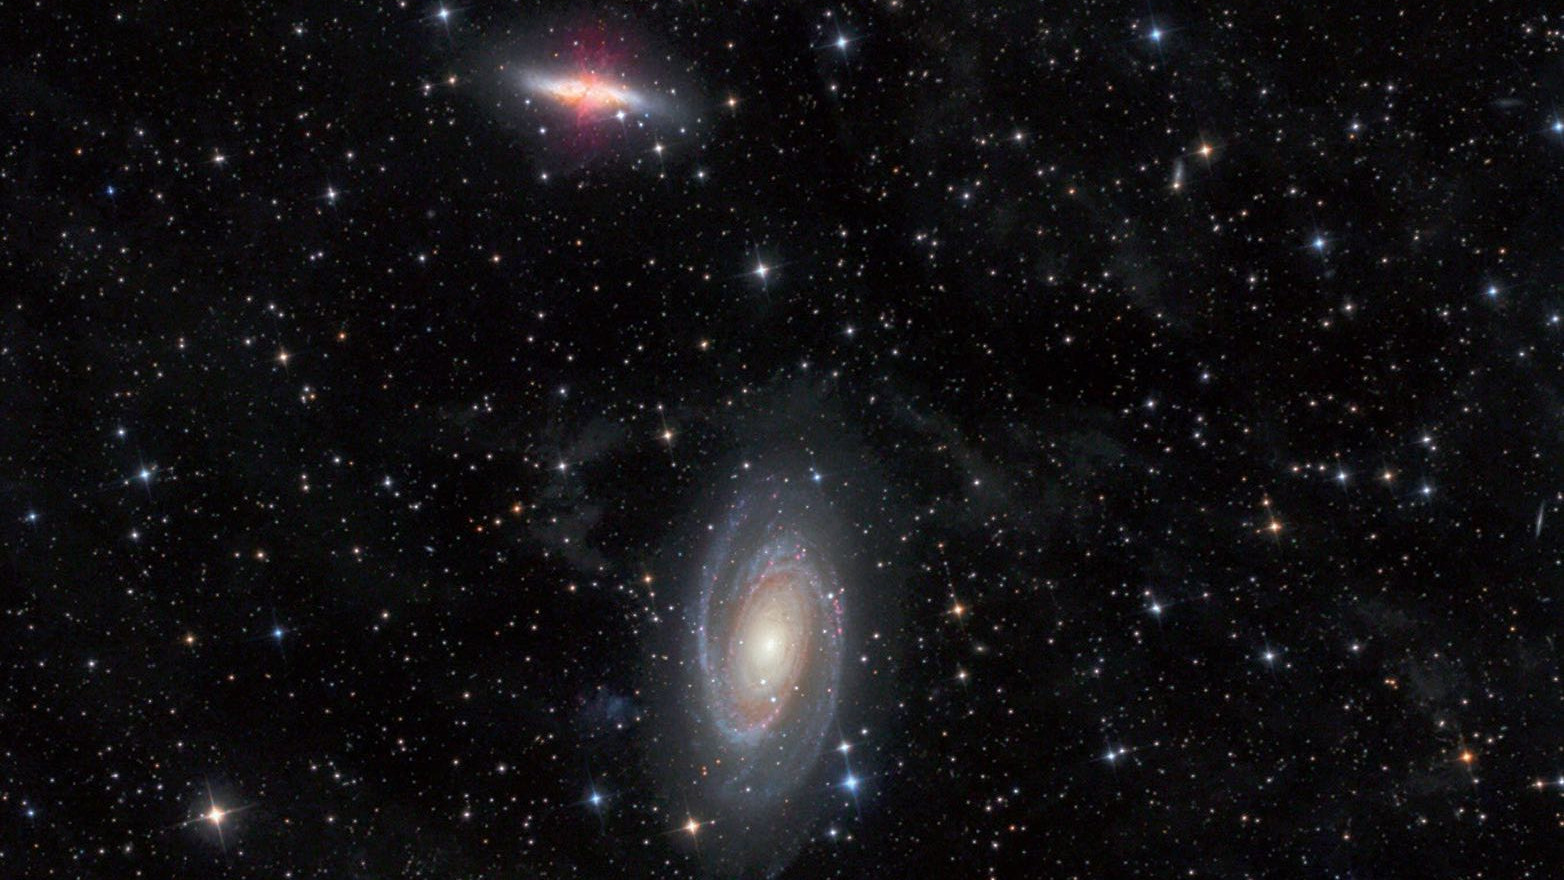 Le galassie M81 e M82 nella costellazione dell’Orsa Maggiore riprese con un telescopio Newton da 4,5 pollici e 440 mm di lunghezza focale. Michael Deger / CCD Guide